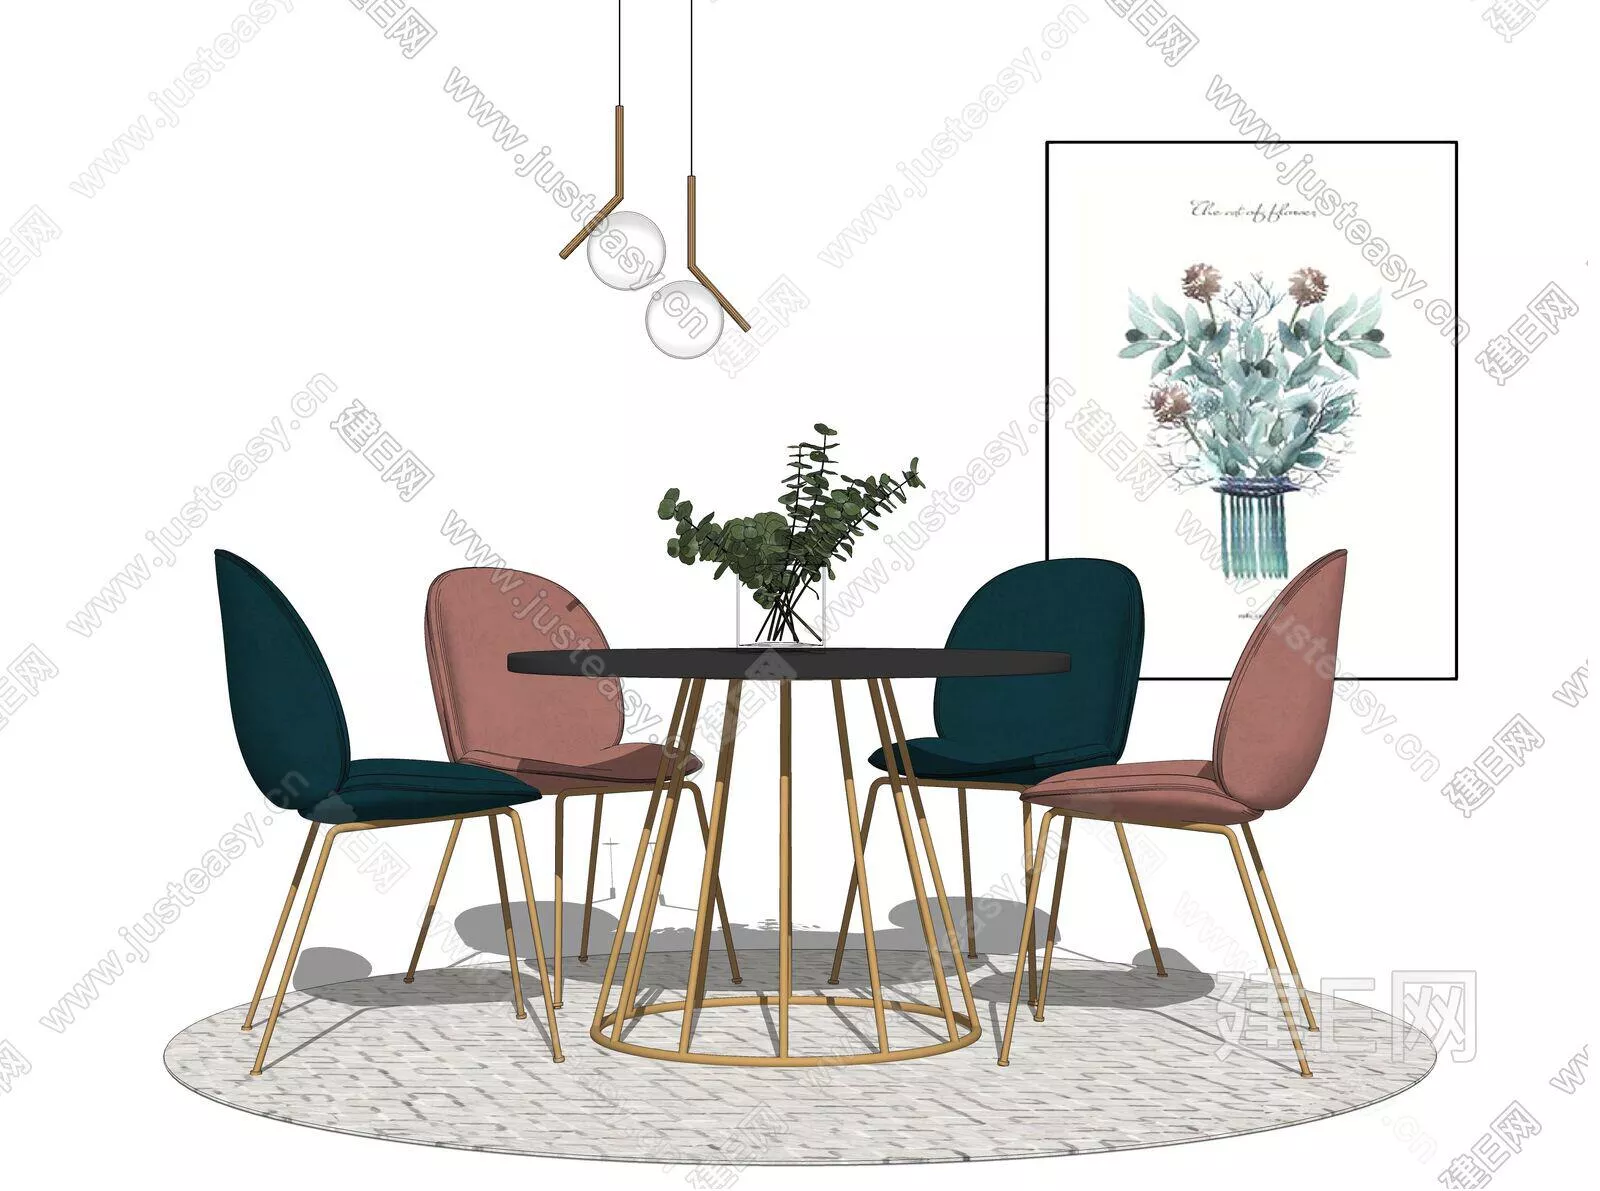 MODERN DINING TABLE SET - SKETCHUP 3D MODEL - ENSCAPE - 109068560